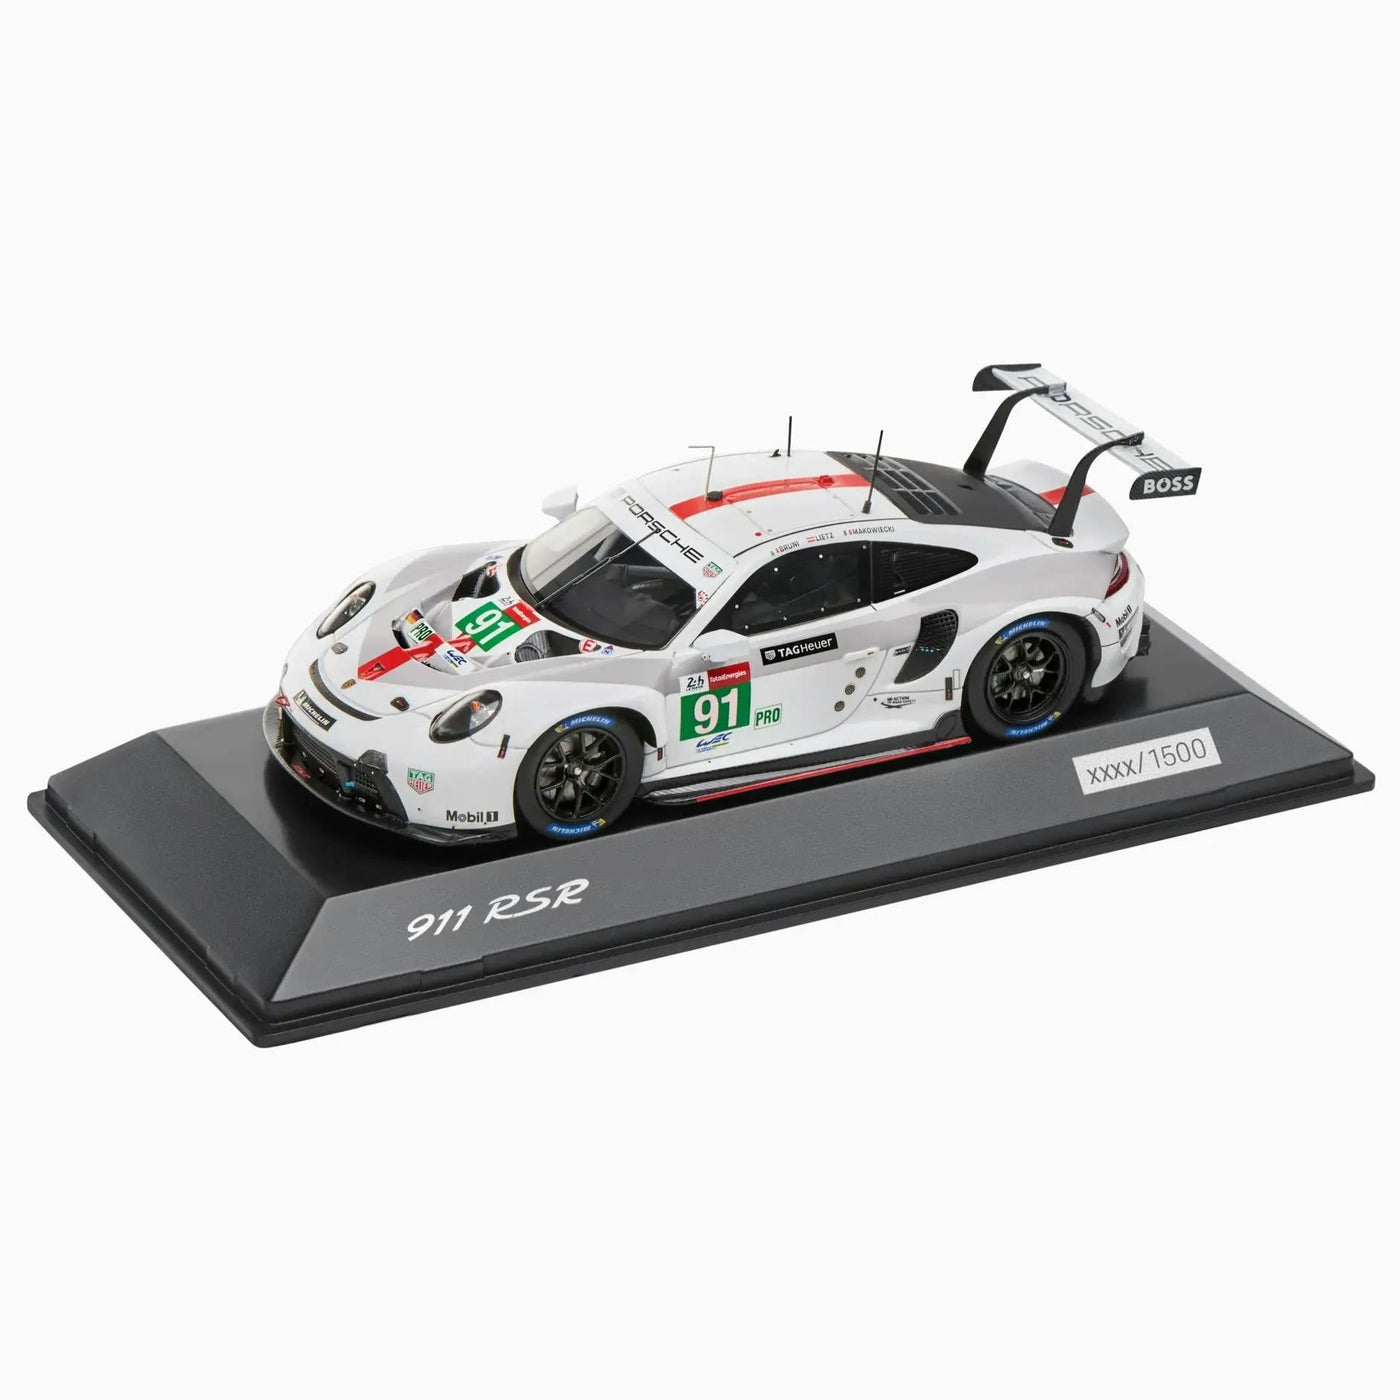 Porsche 911 RSR #91 24h Le Mans 2021 (991) Model Car 1:43 - Grey